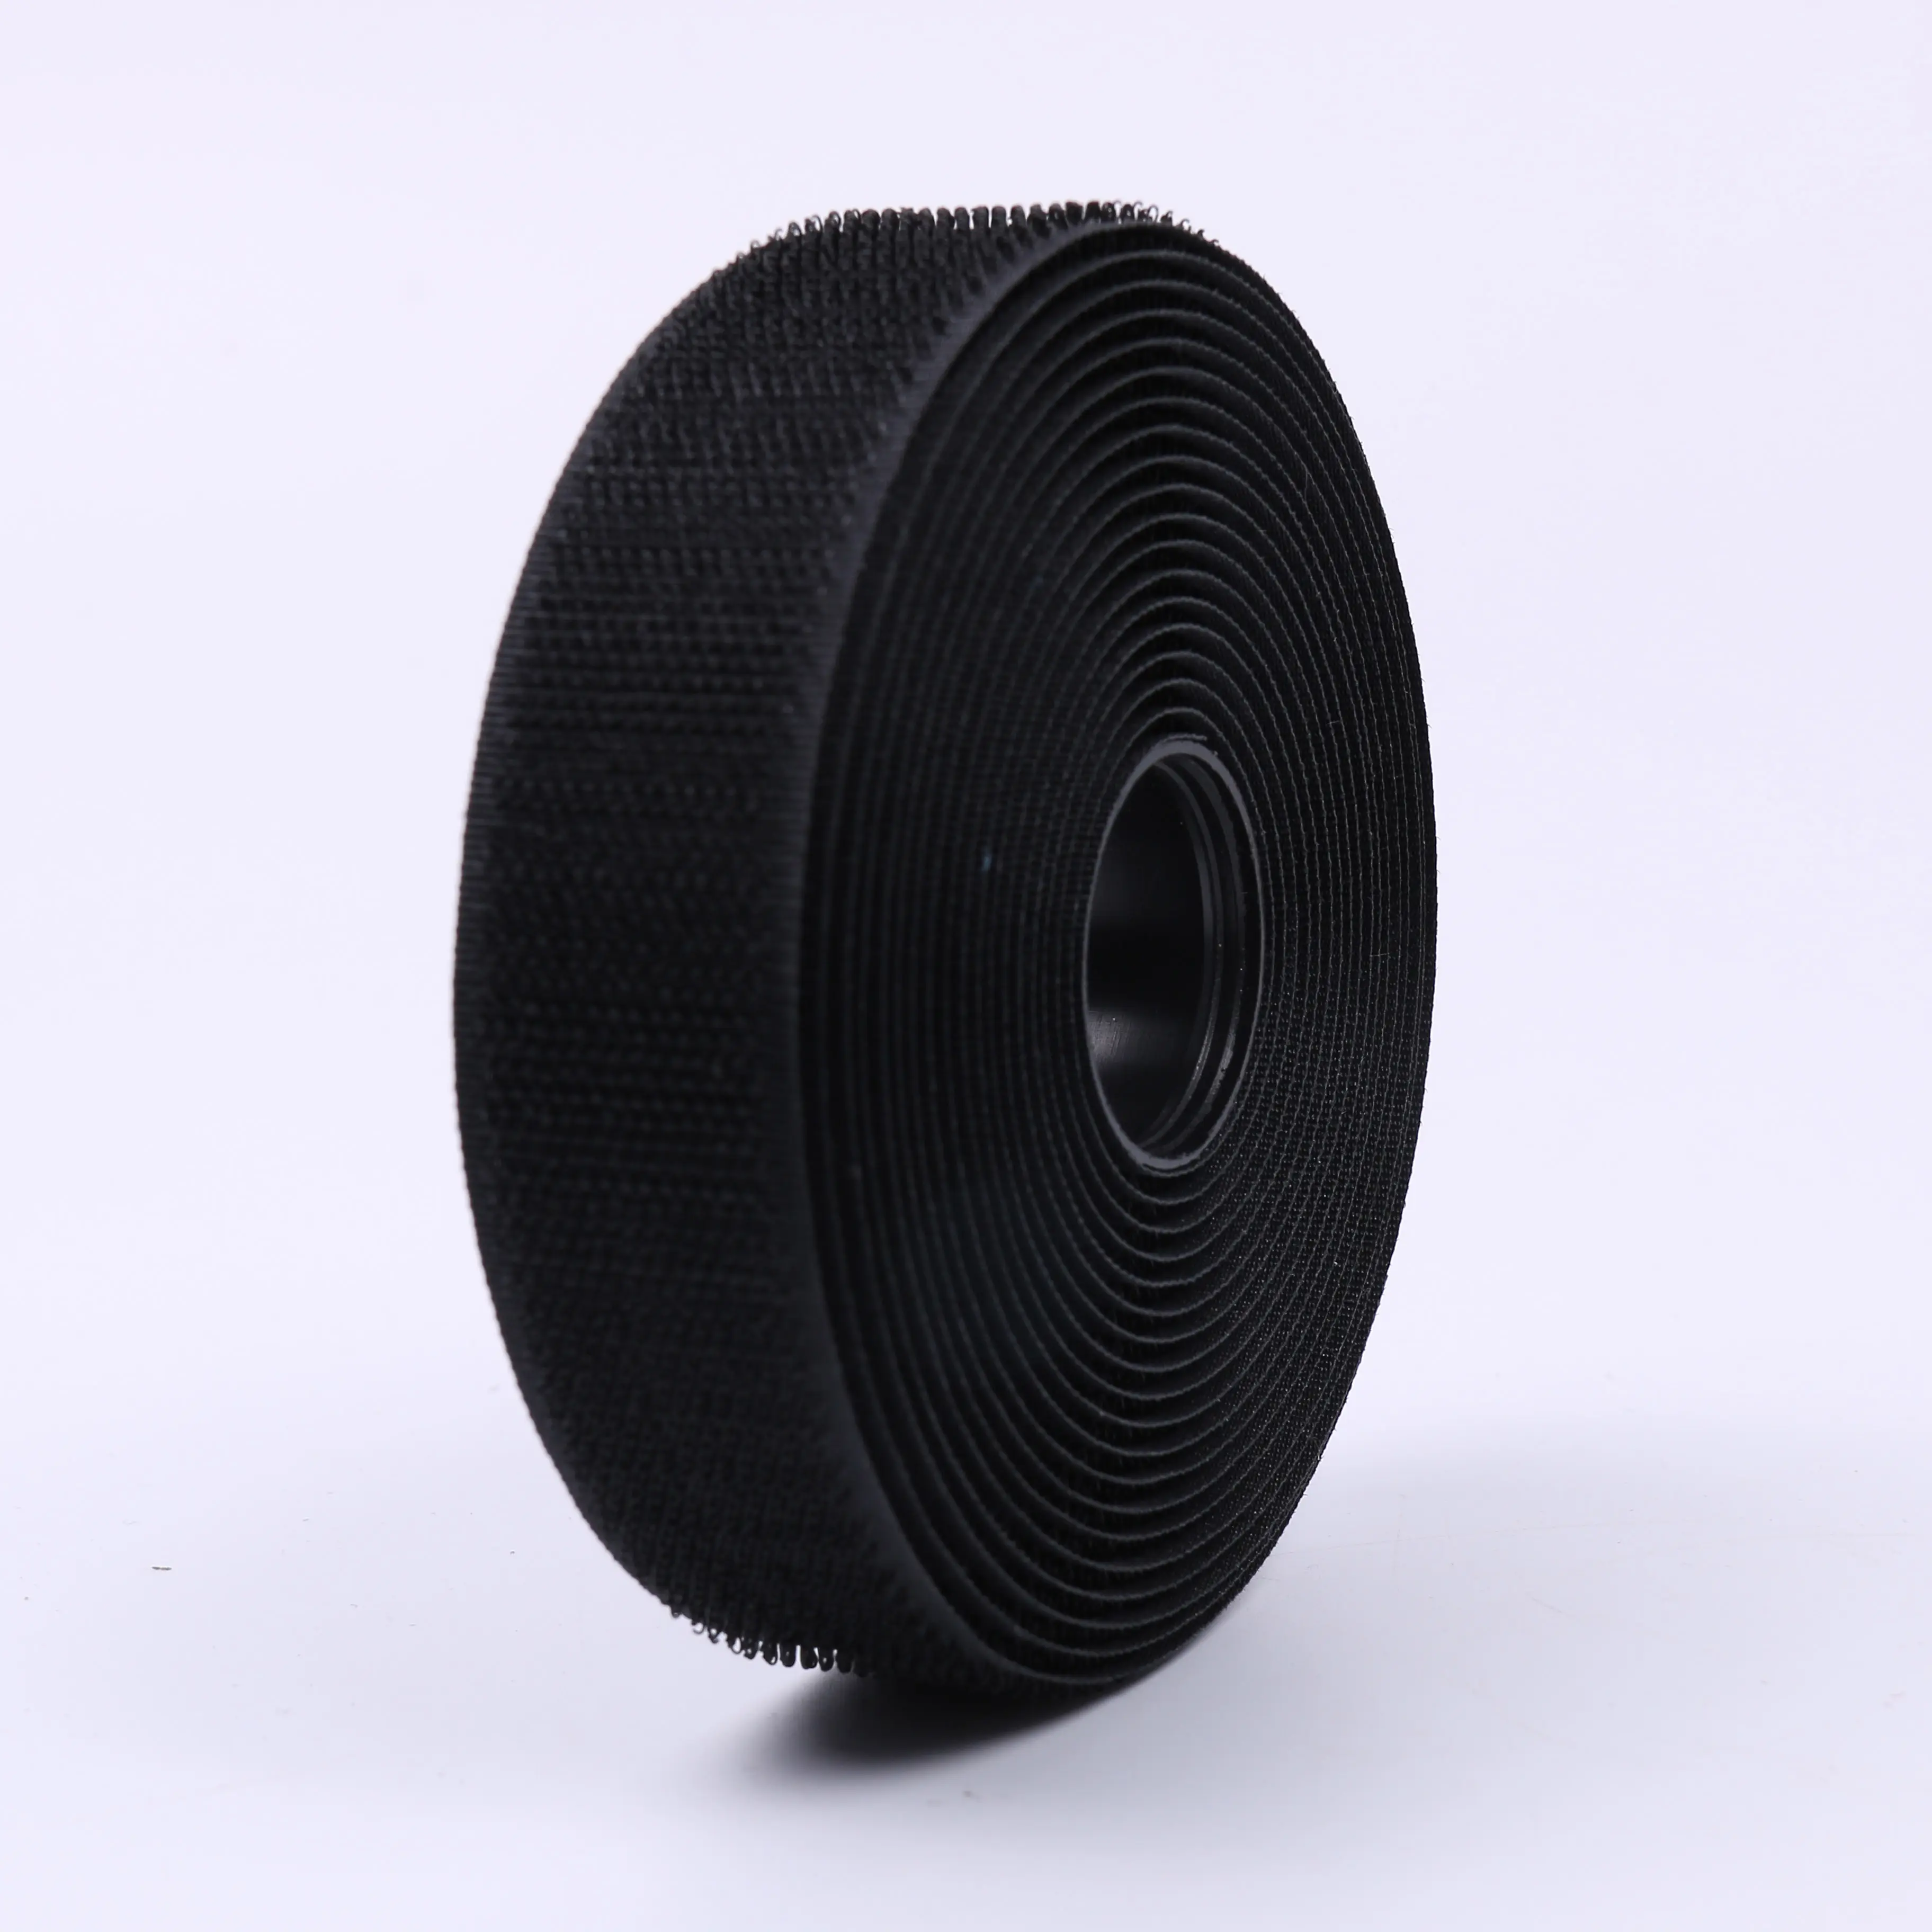 Черный 100% нейлоновый литой тонкий пластиковый высококачественный кабельный зажим и петля